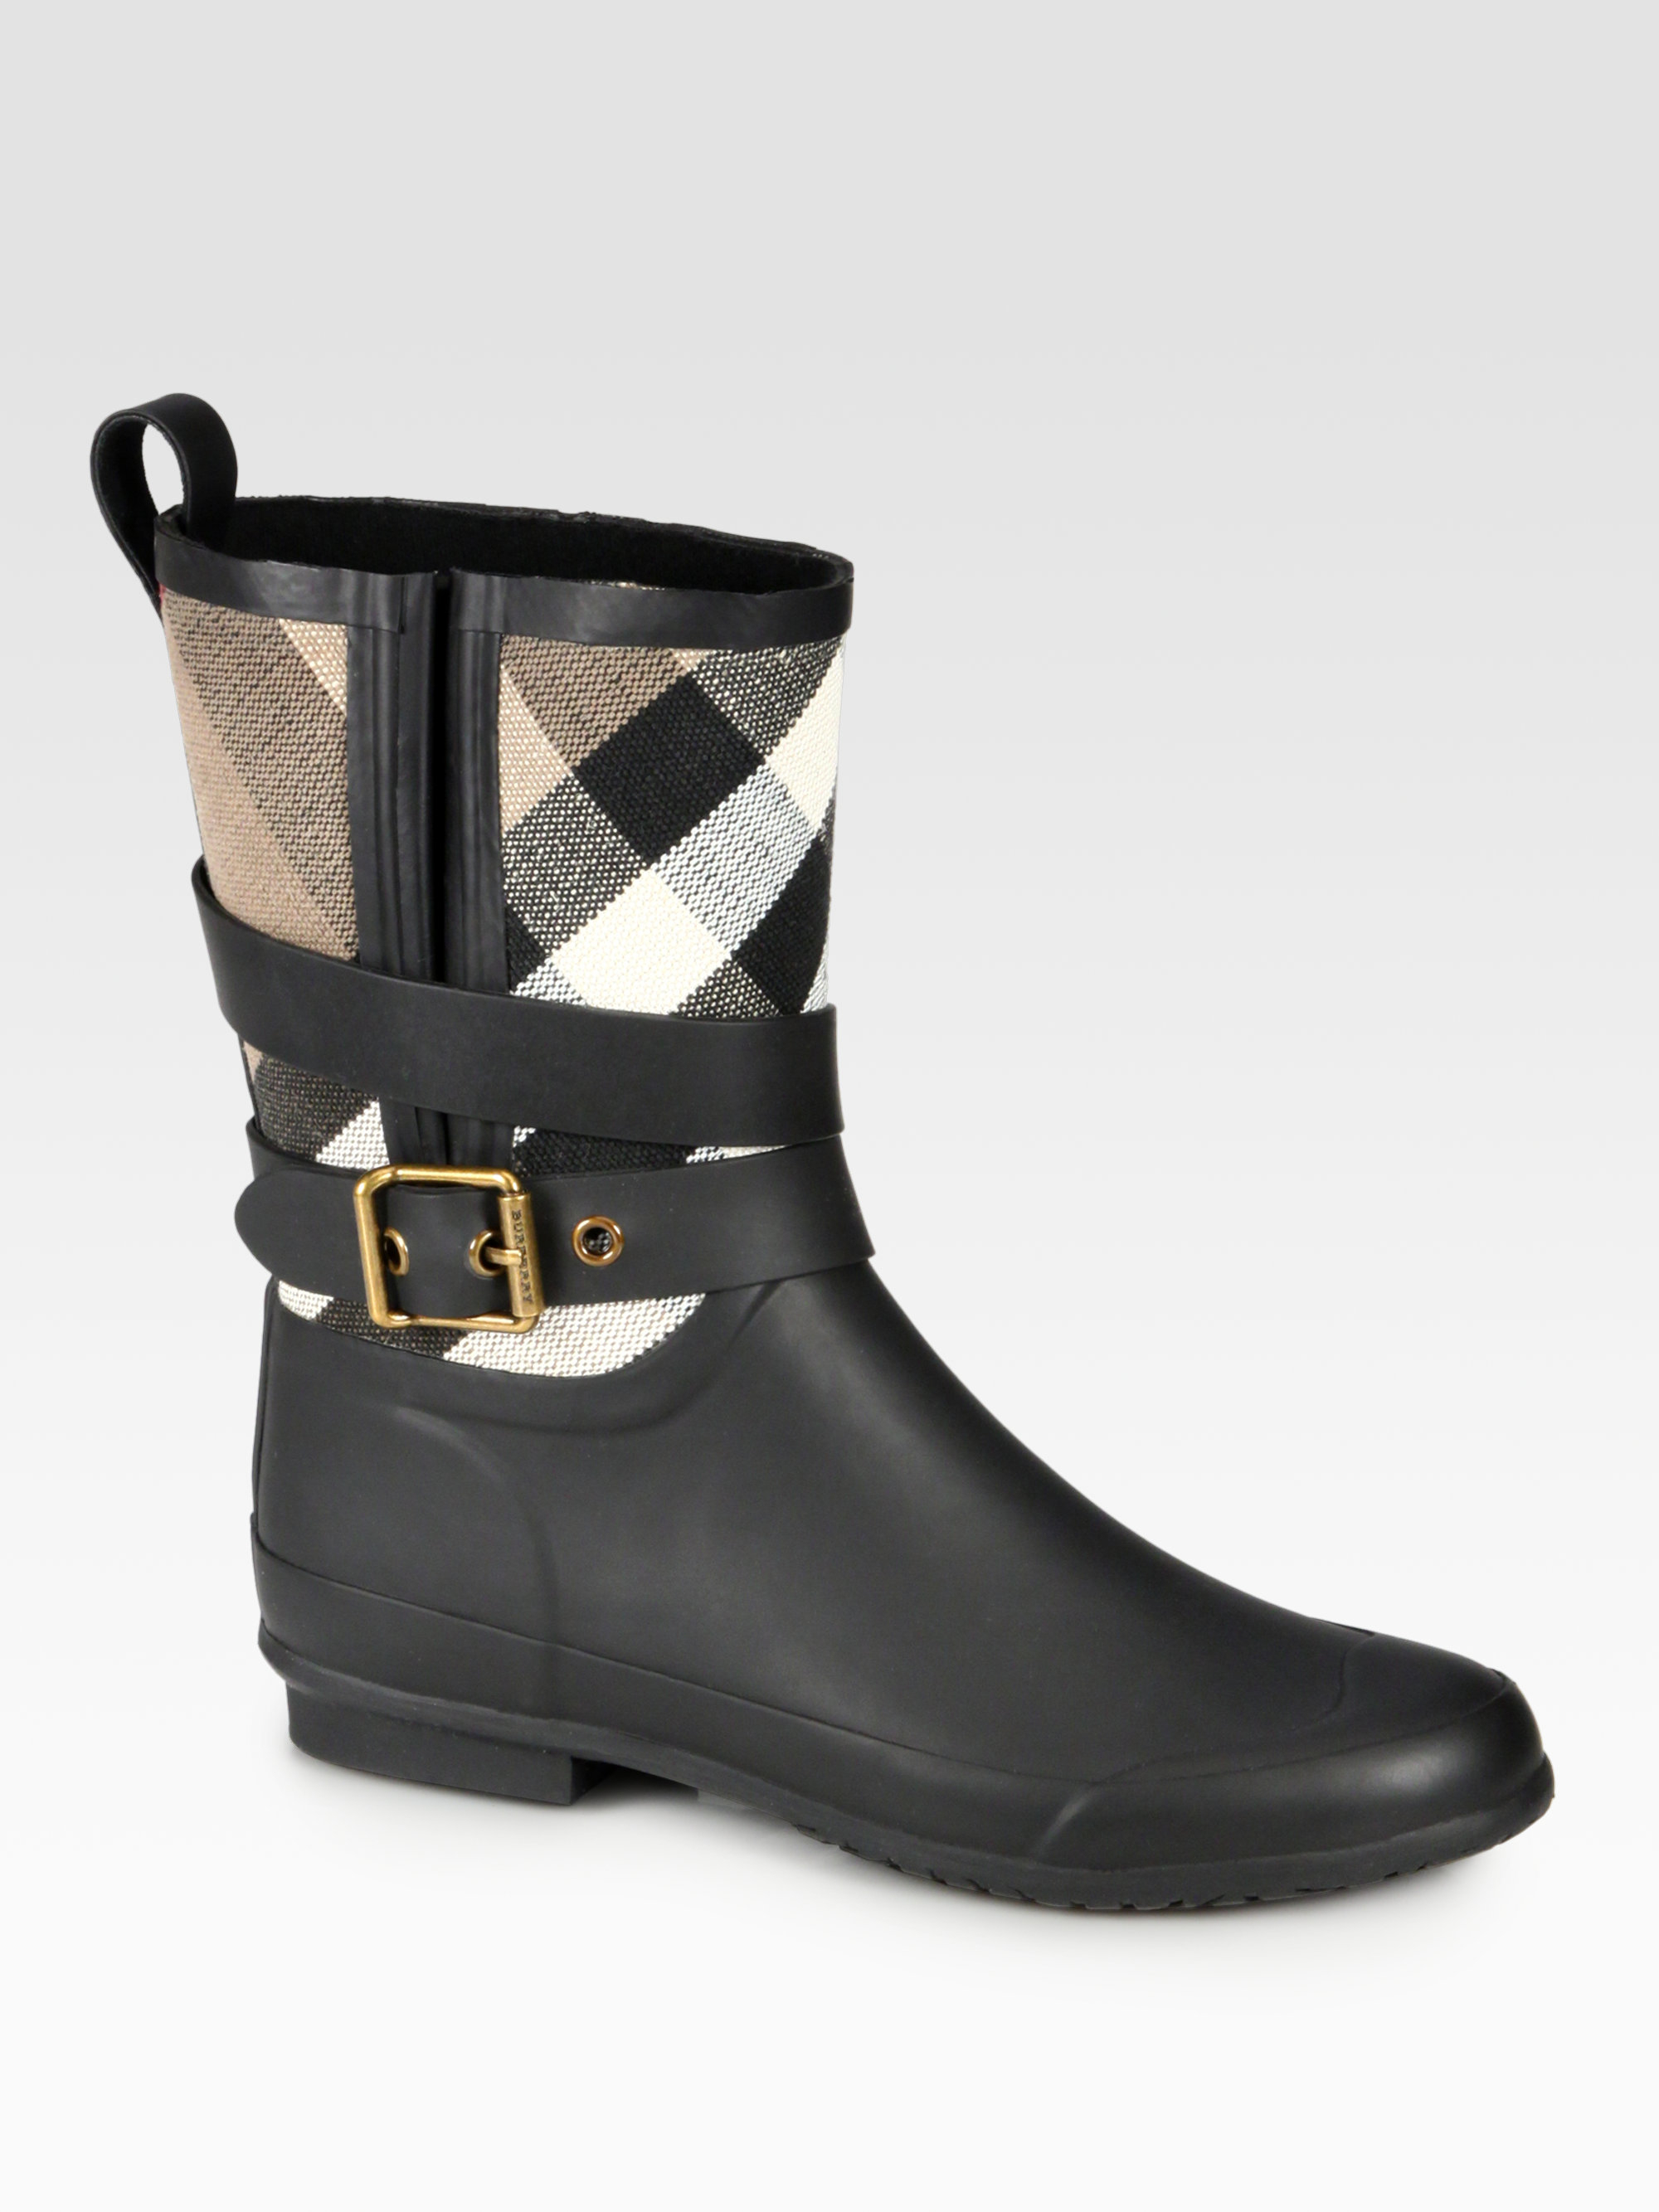 burberry women's short rain boots